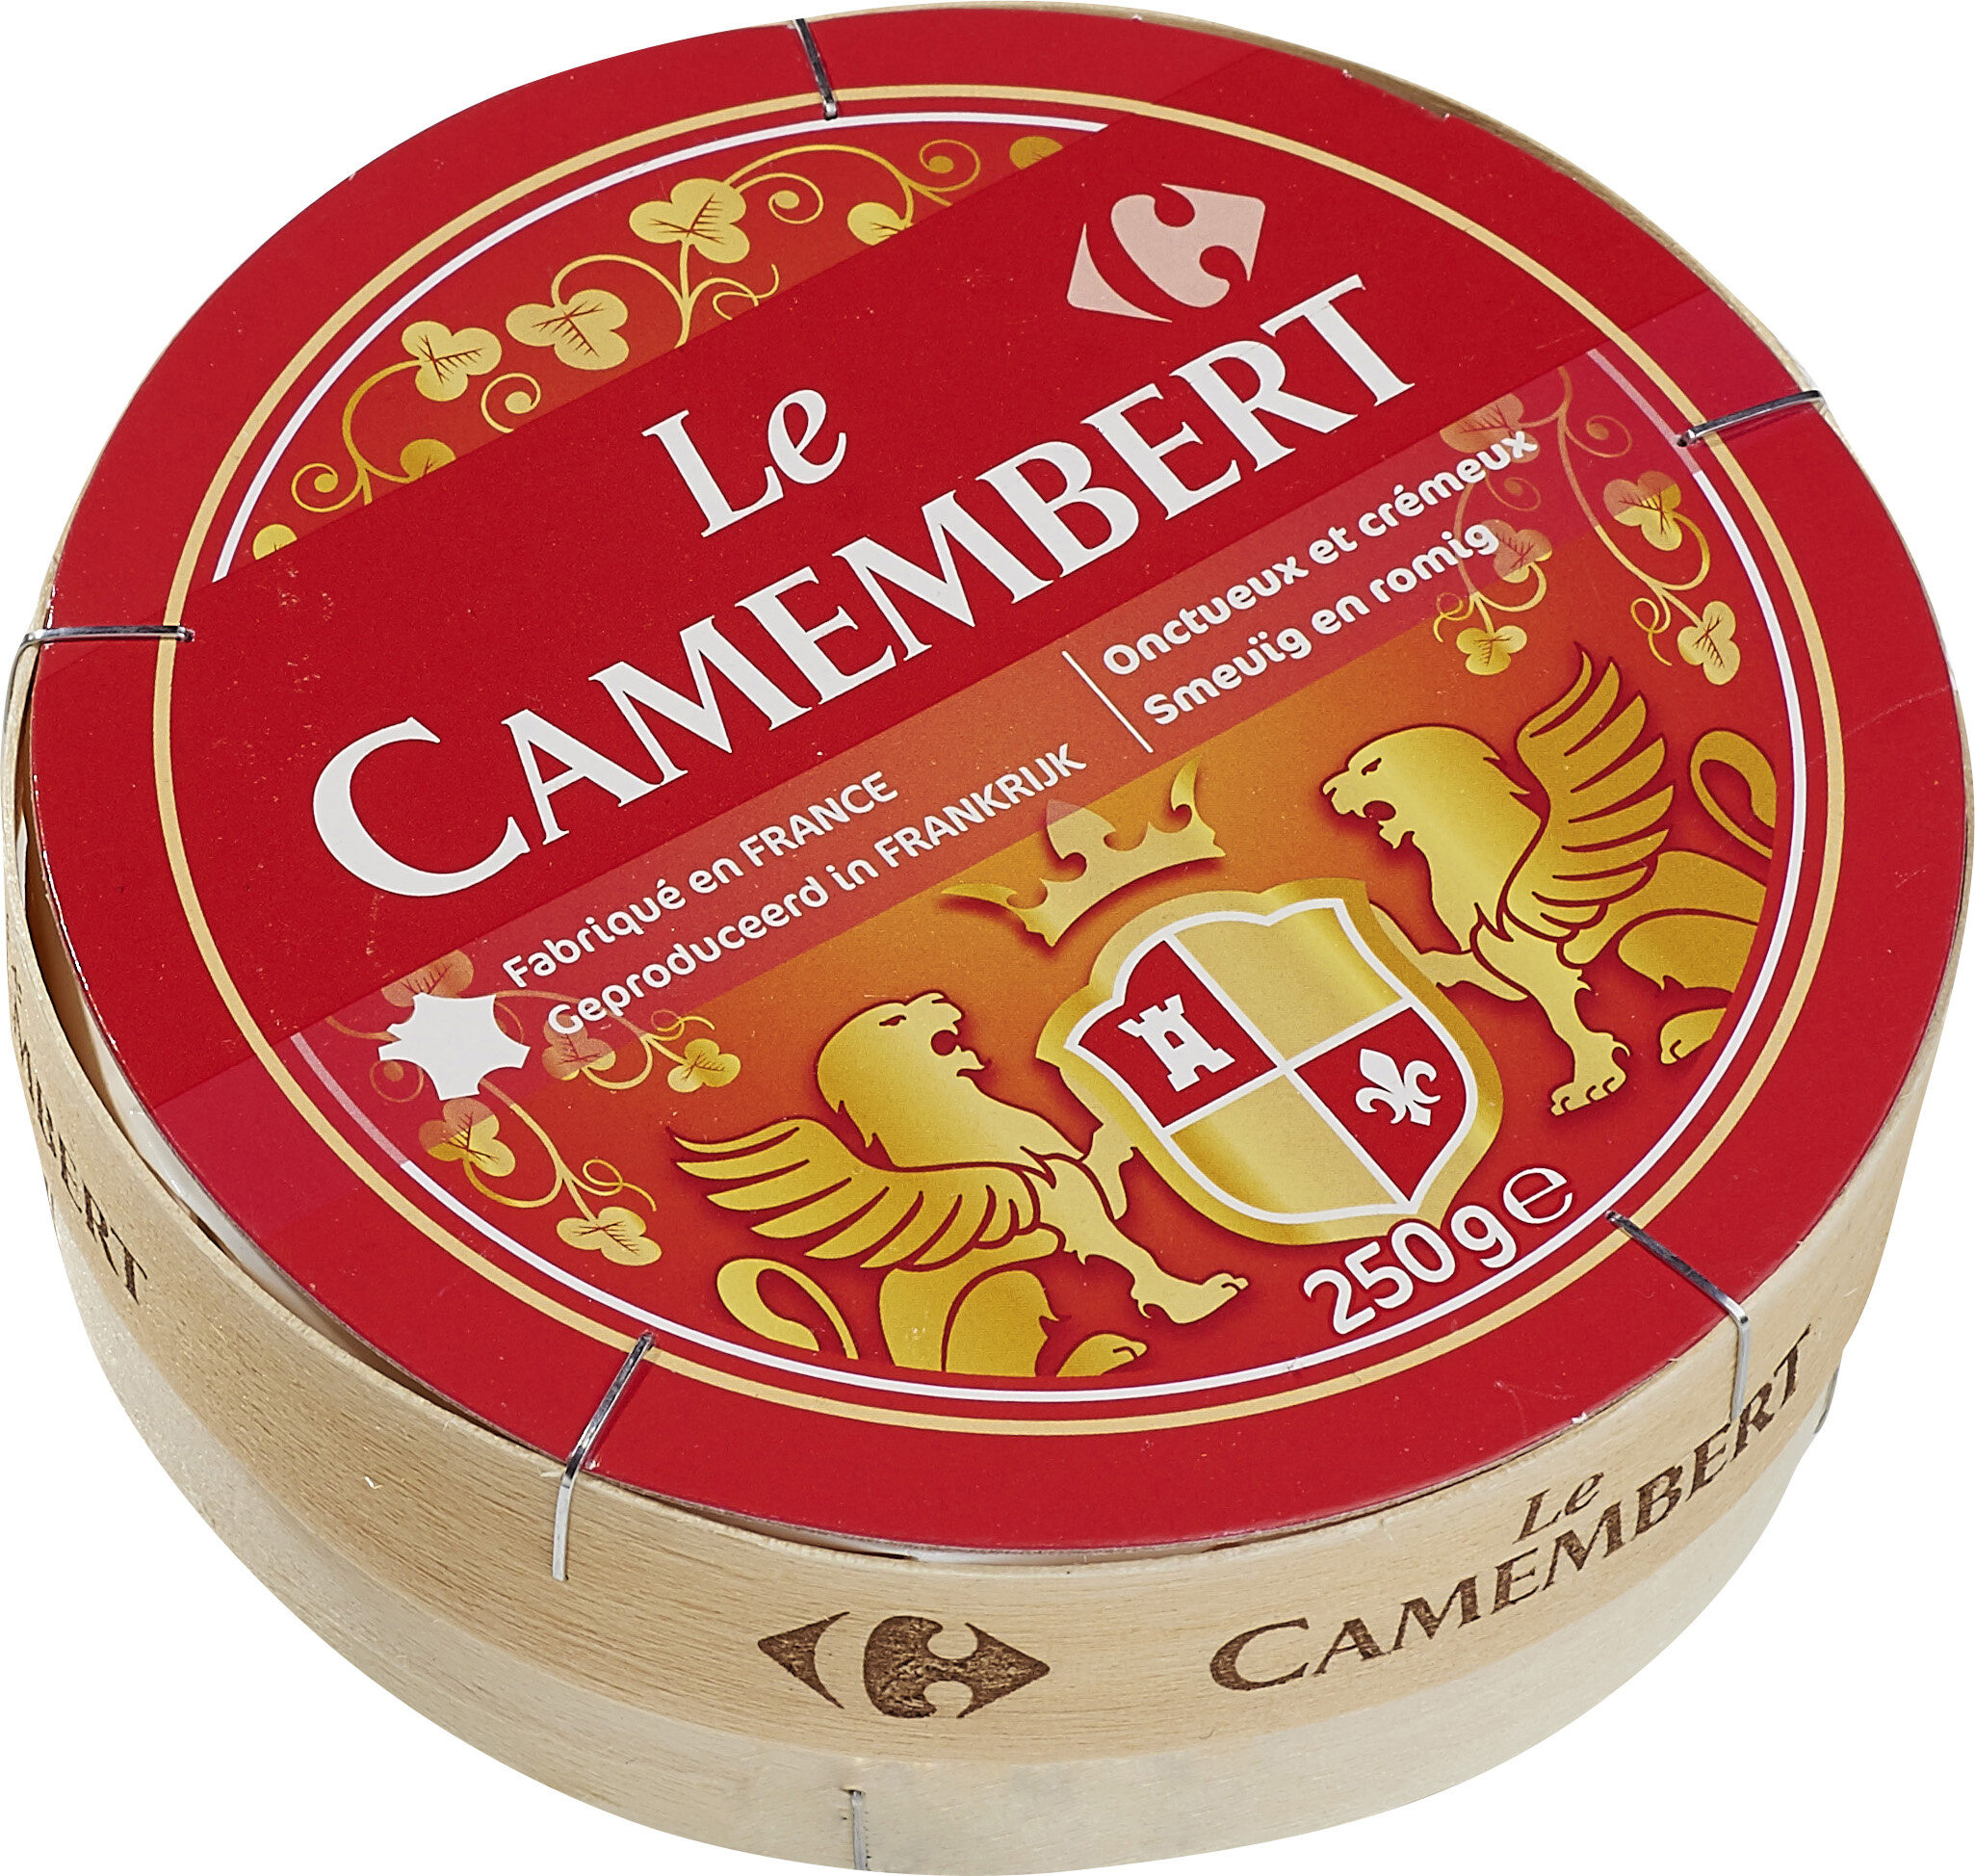 Le Camembert - Fromage à patte molle au lait pasteurisé - نتاج - fr